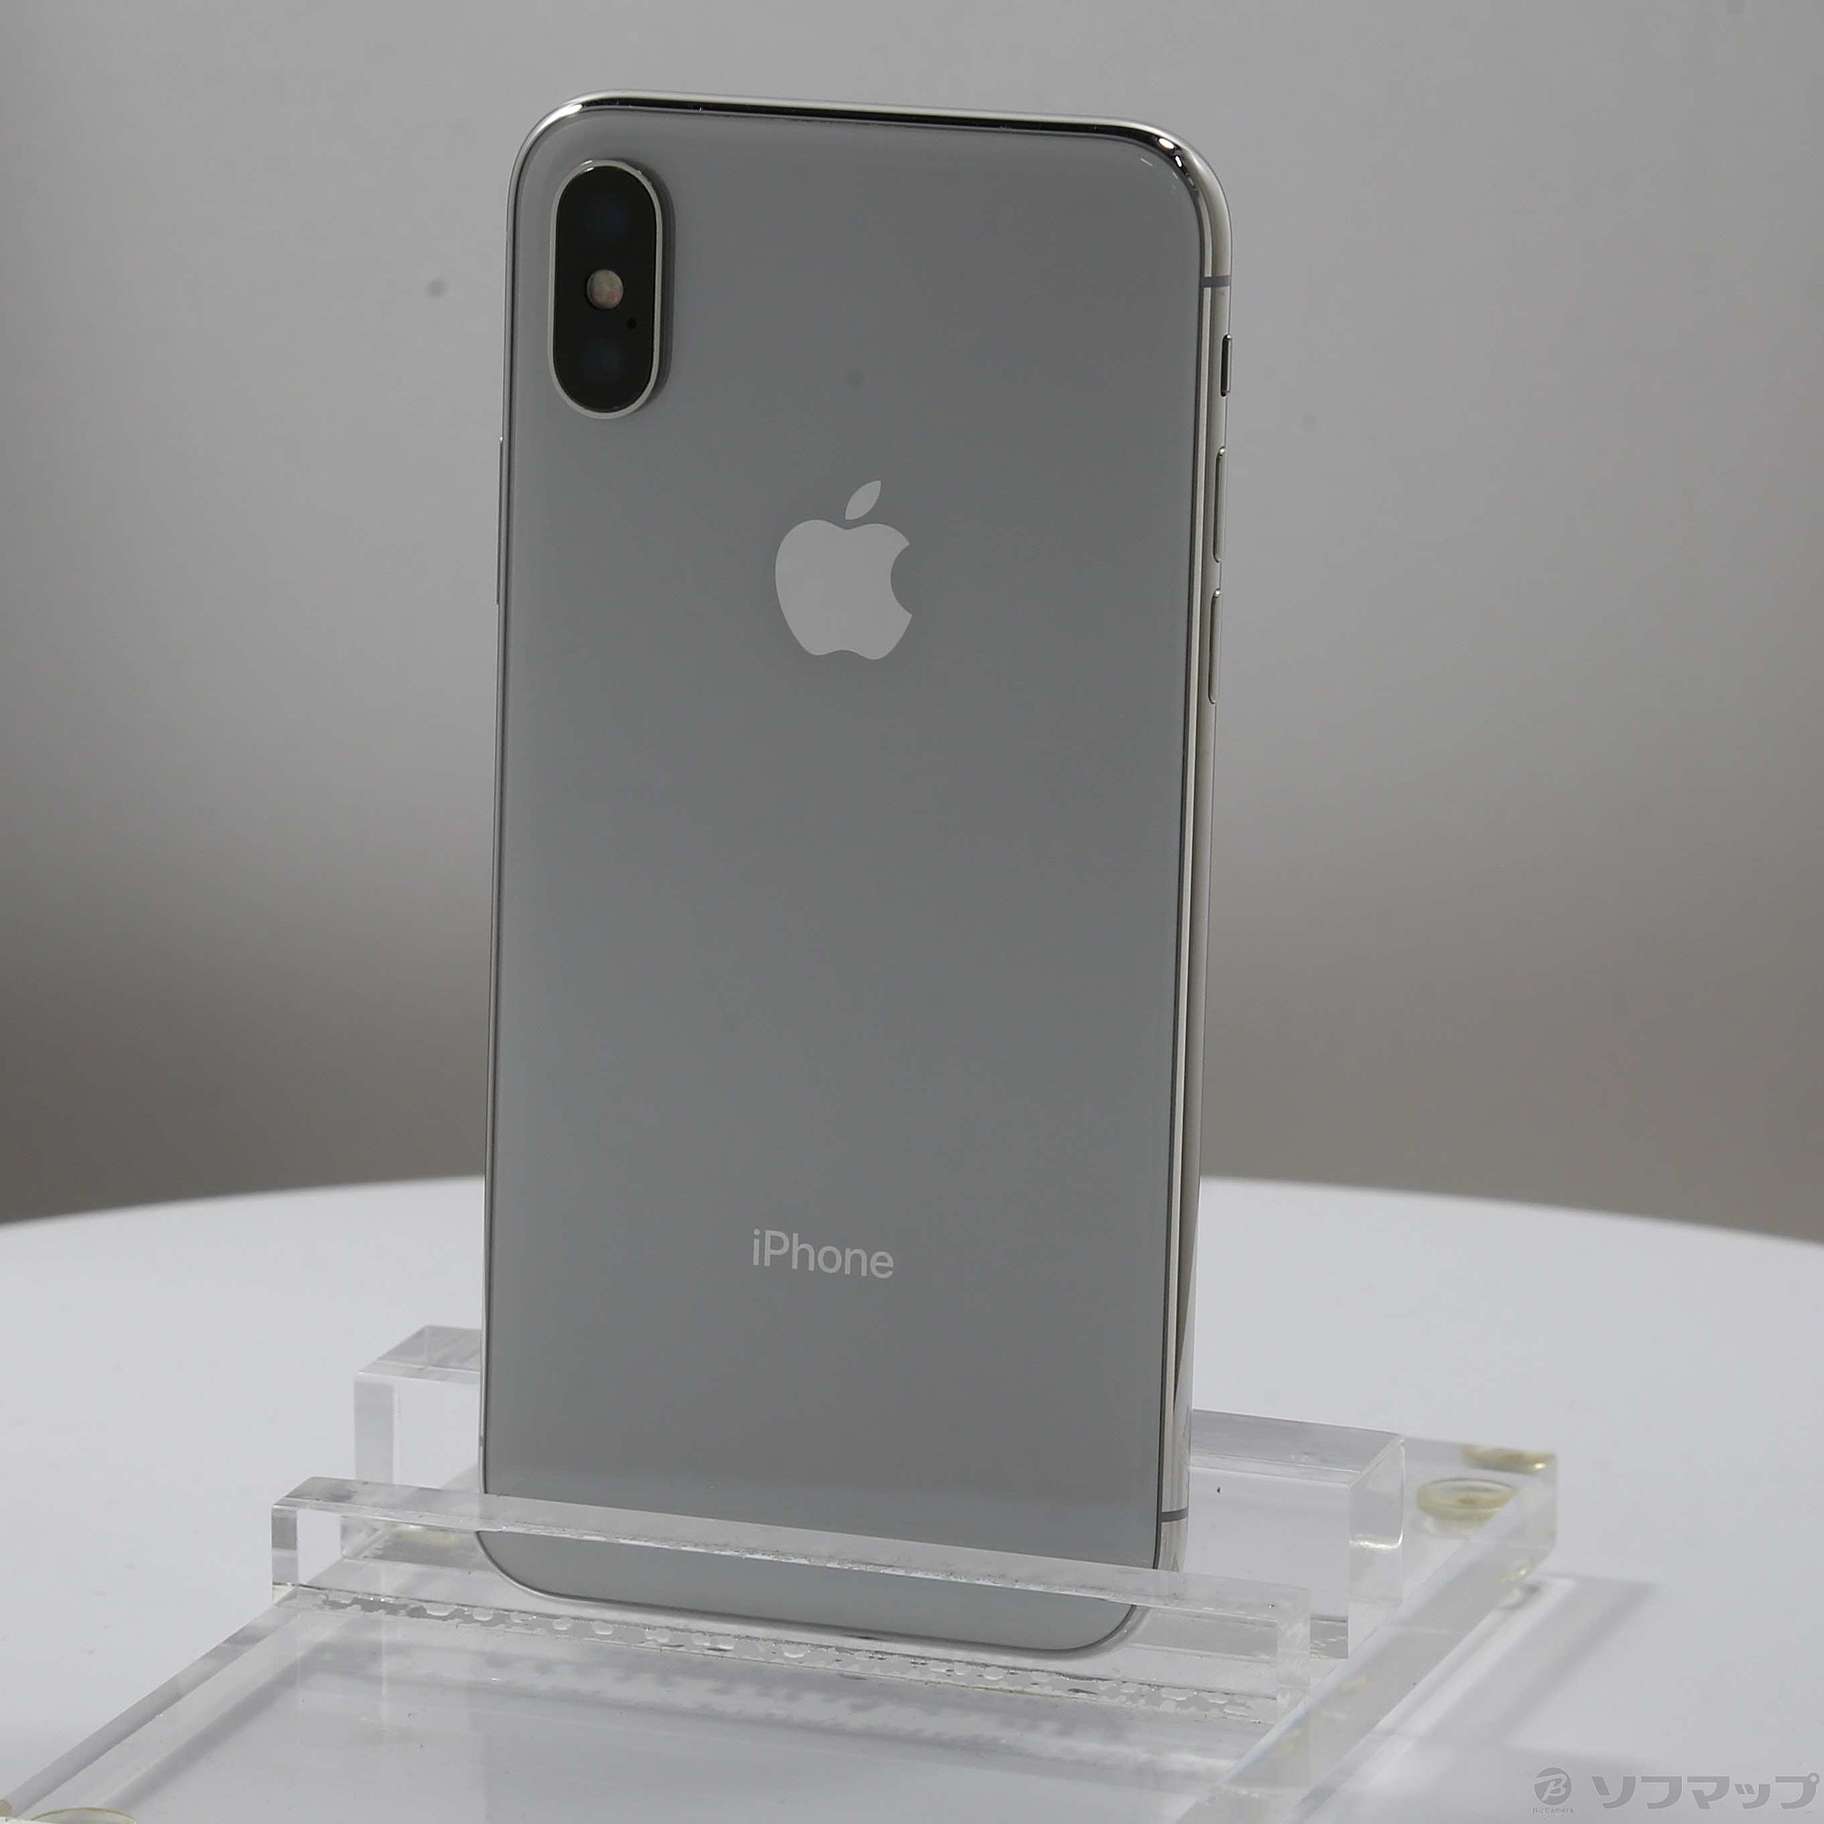 Apple iPhone X 256GB シルバー SIMフリースマートフォン/携帯電話